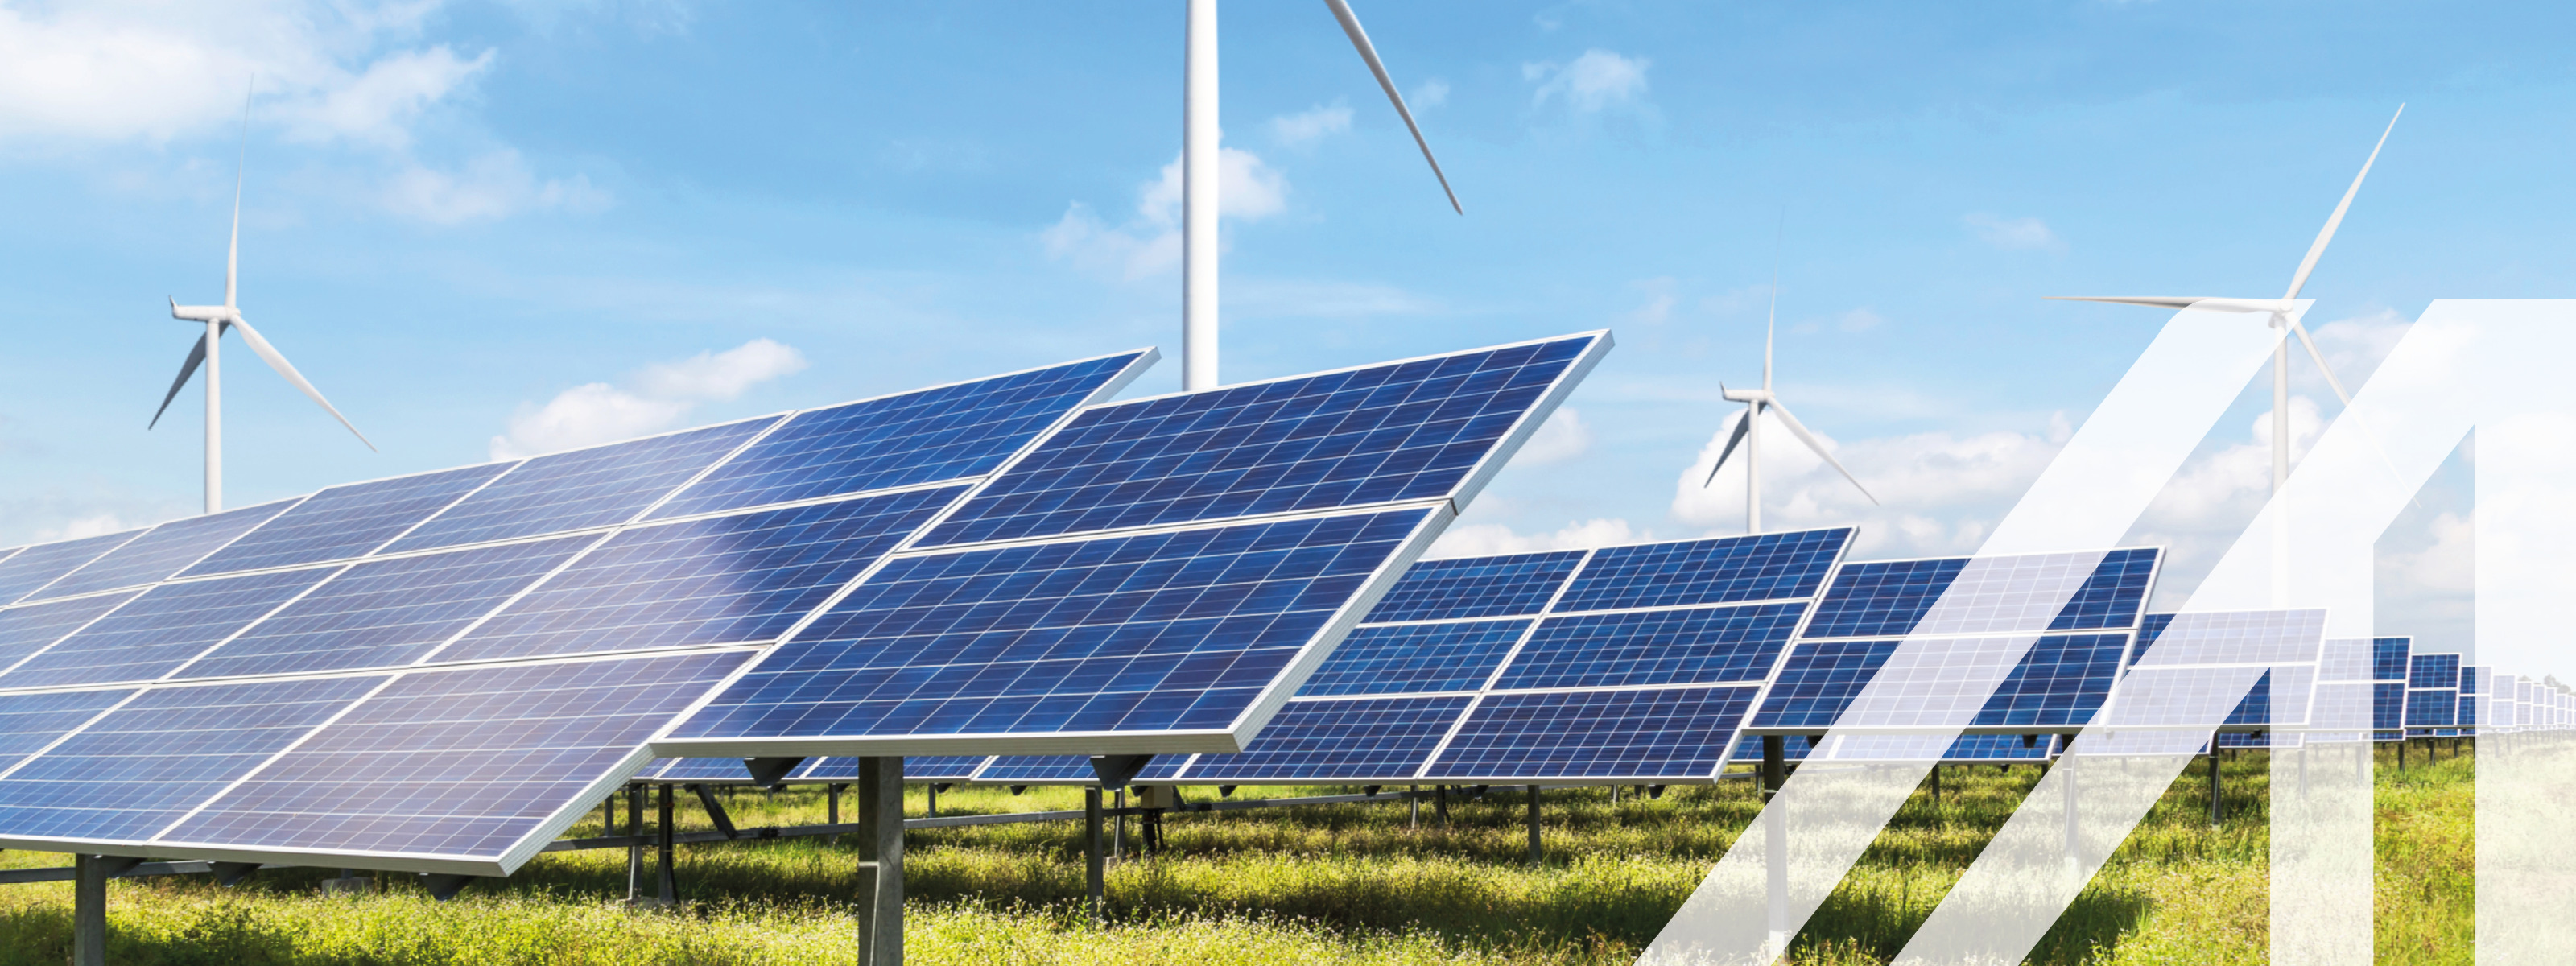 Solarzellen mit Windturbinen, die in einem Hybridkraftwerk Strom erzeugen, unter blauem Himmel auf der grünen Wiese. 